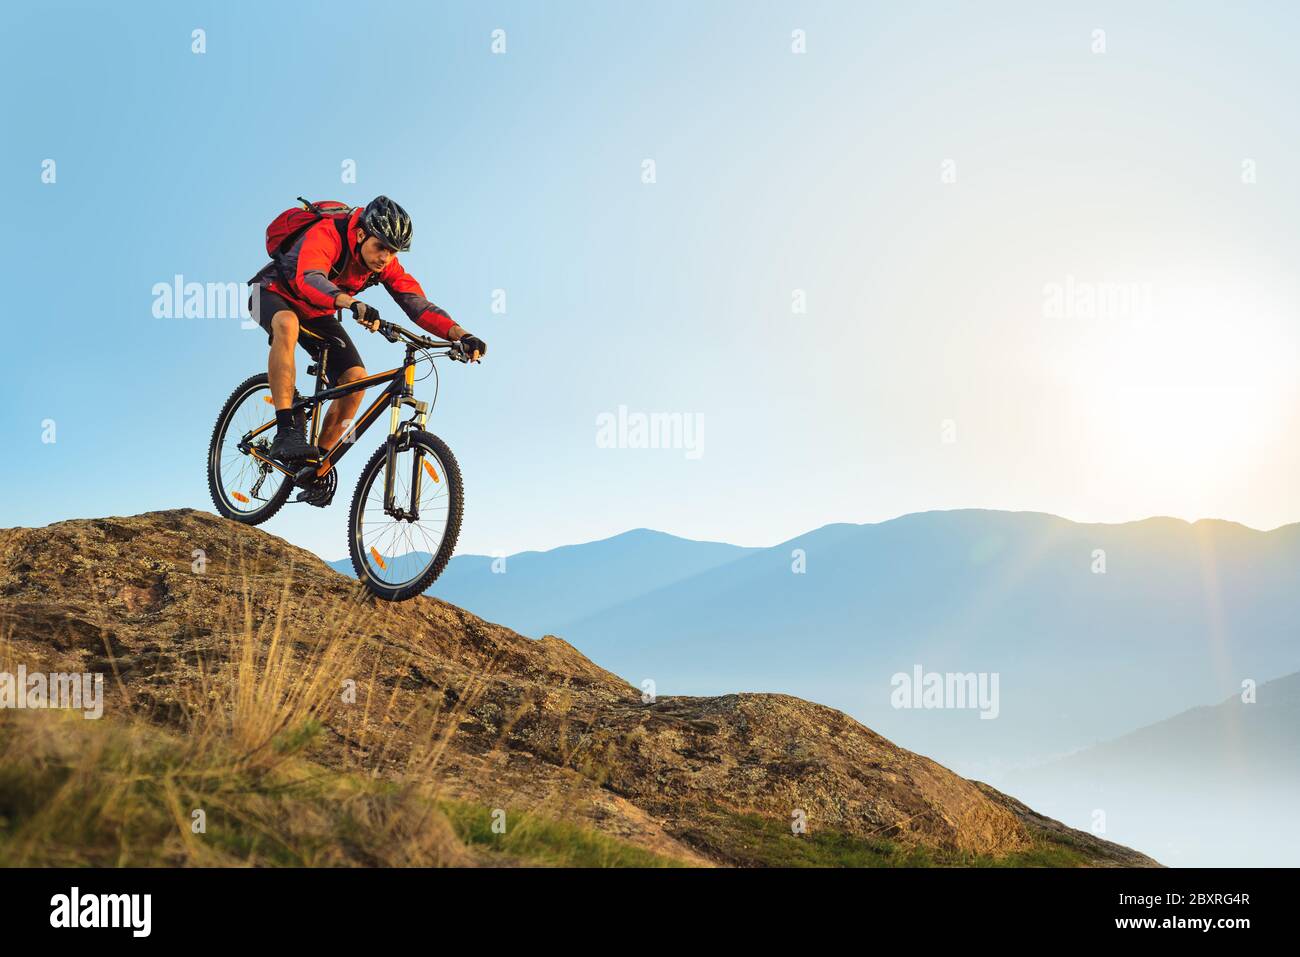 Radfahrer in roter Jacke mit dem Fahrrad in den schönen Bergen den Felsen hinunter auf dem Sunrise Sky Hintergrund. Extreme Sport und Enduro Biking Konzept. Stockfoto